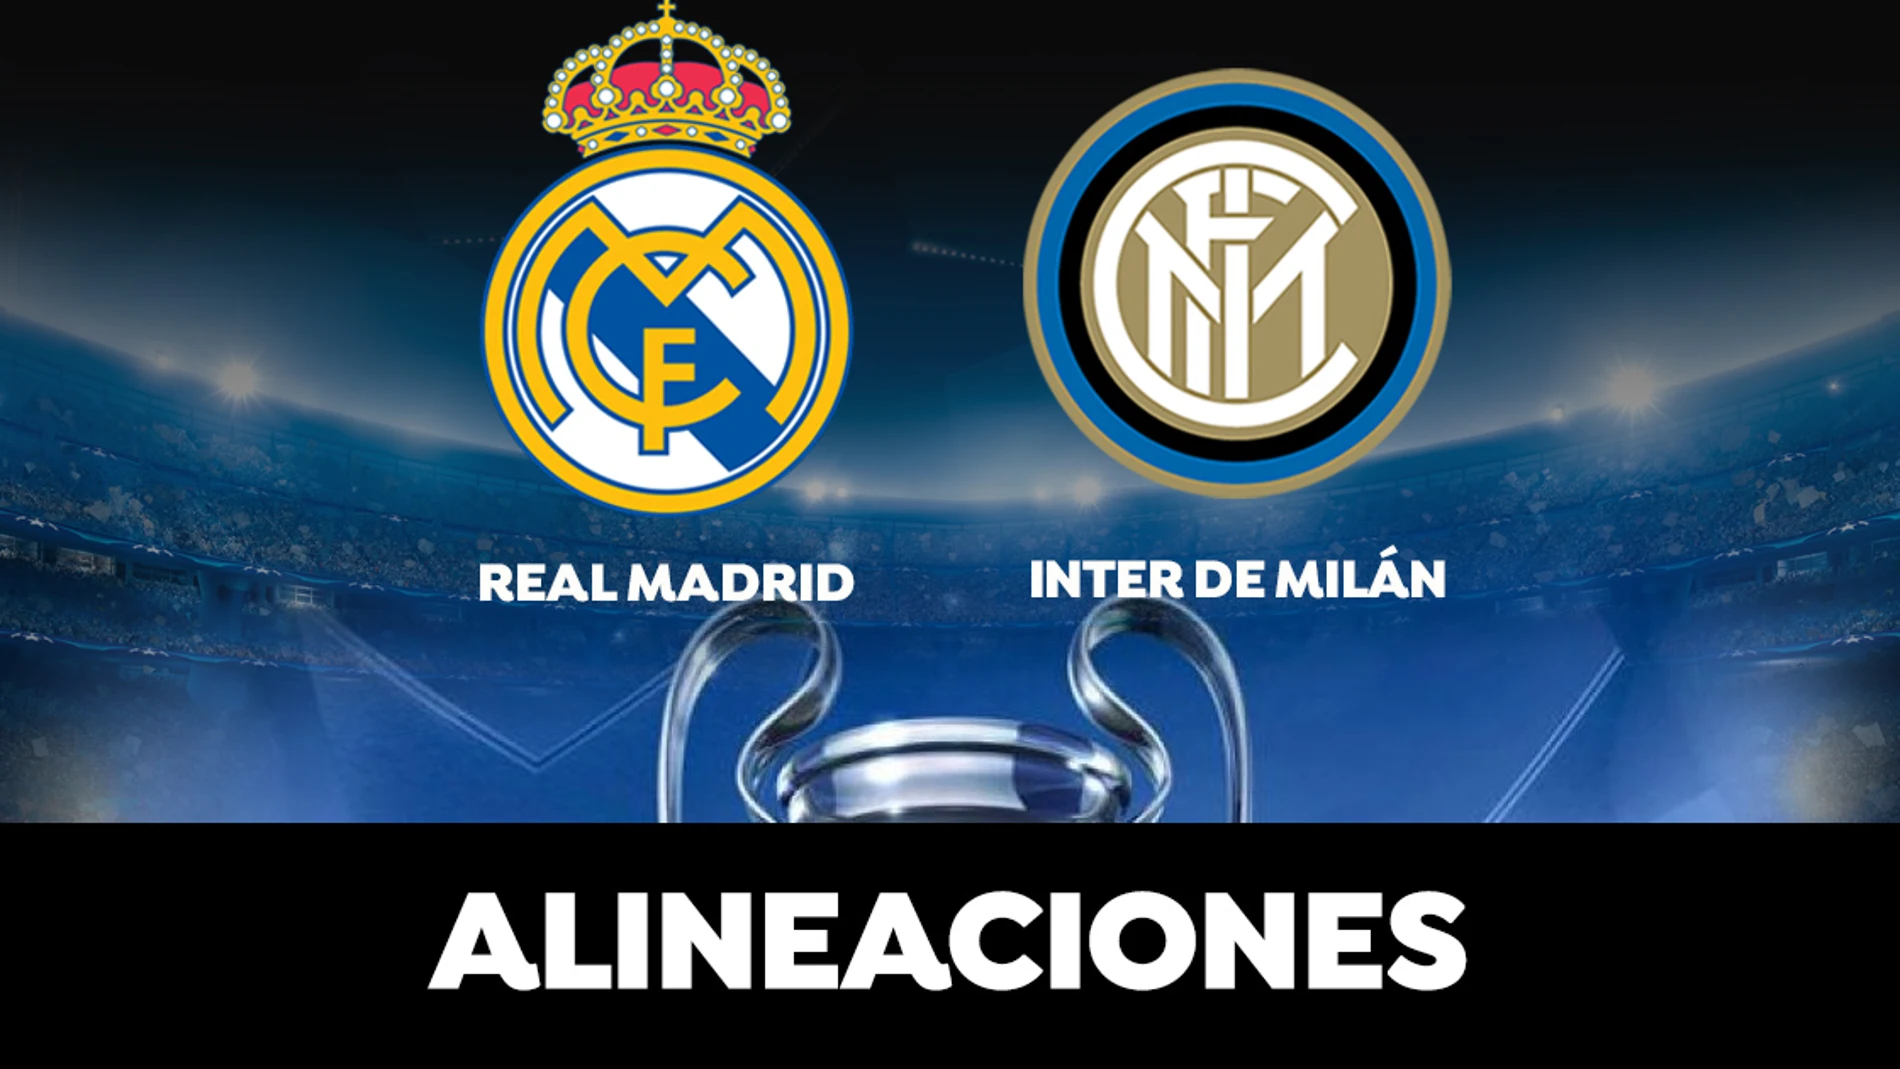 Alineación del Real Madrid en el partido de hoy de la Champions Legue ante el Inter de Milán